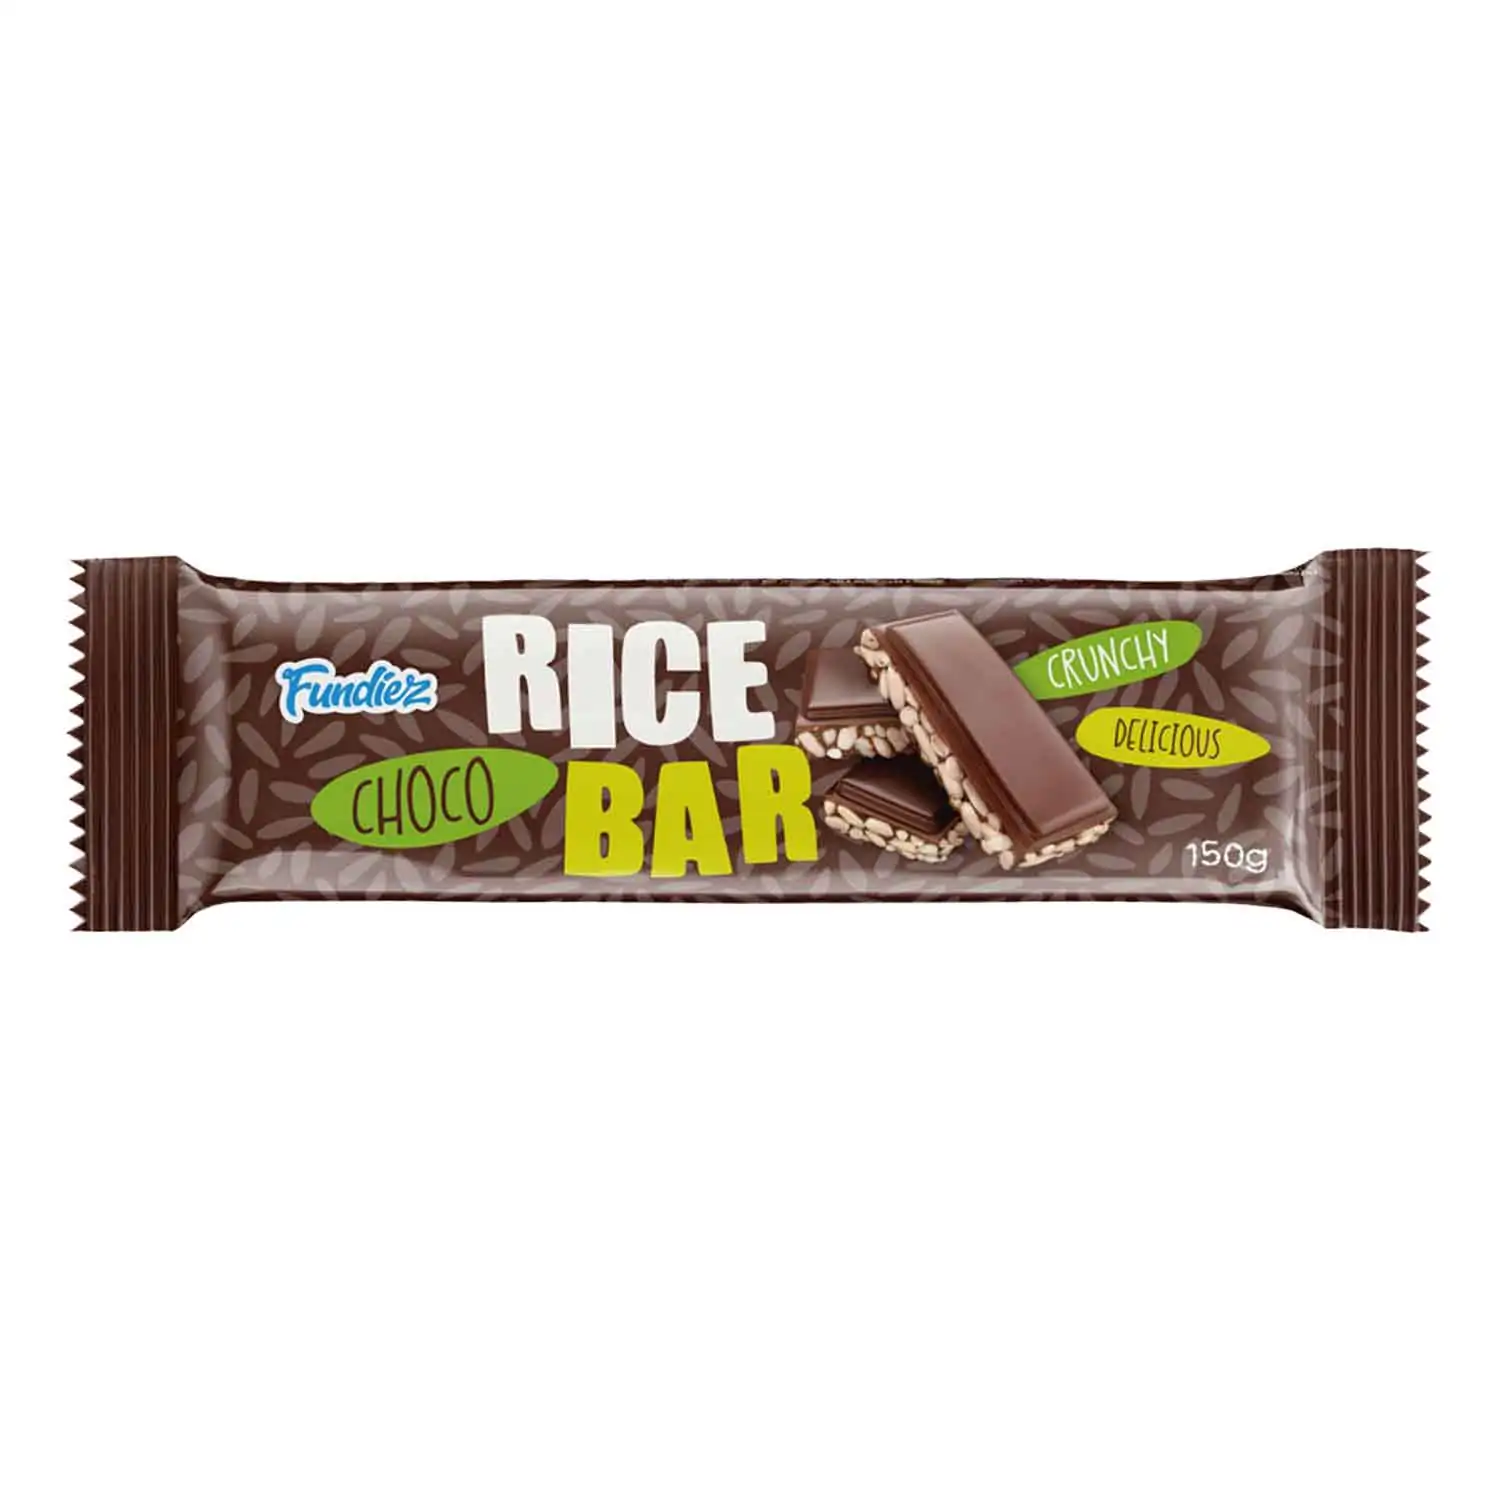 Fundiez choco rice bar 150g - Buy at Real Tobacco